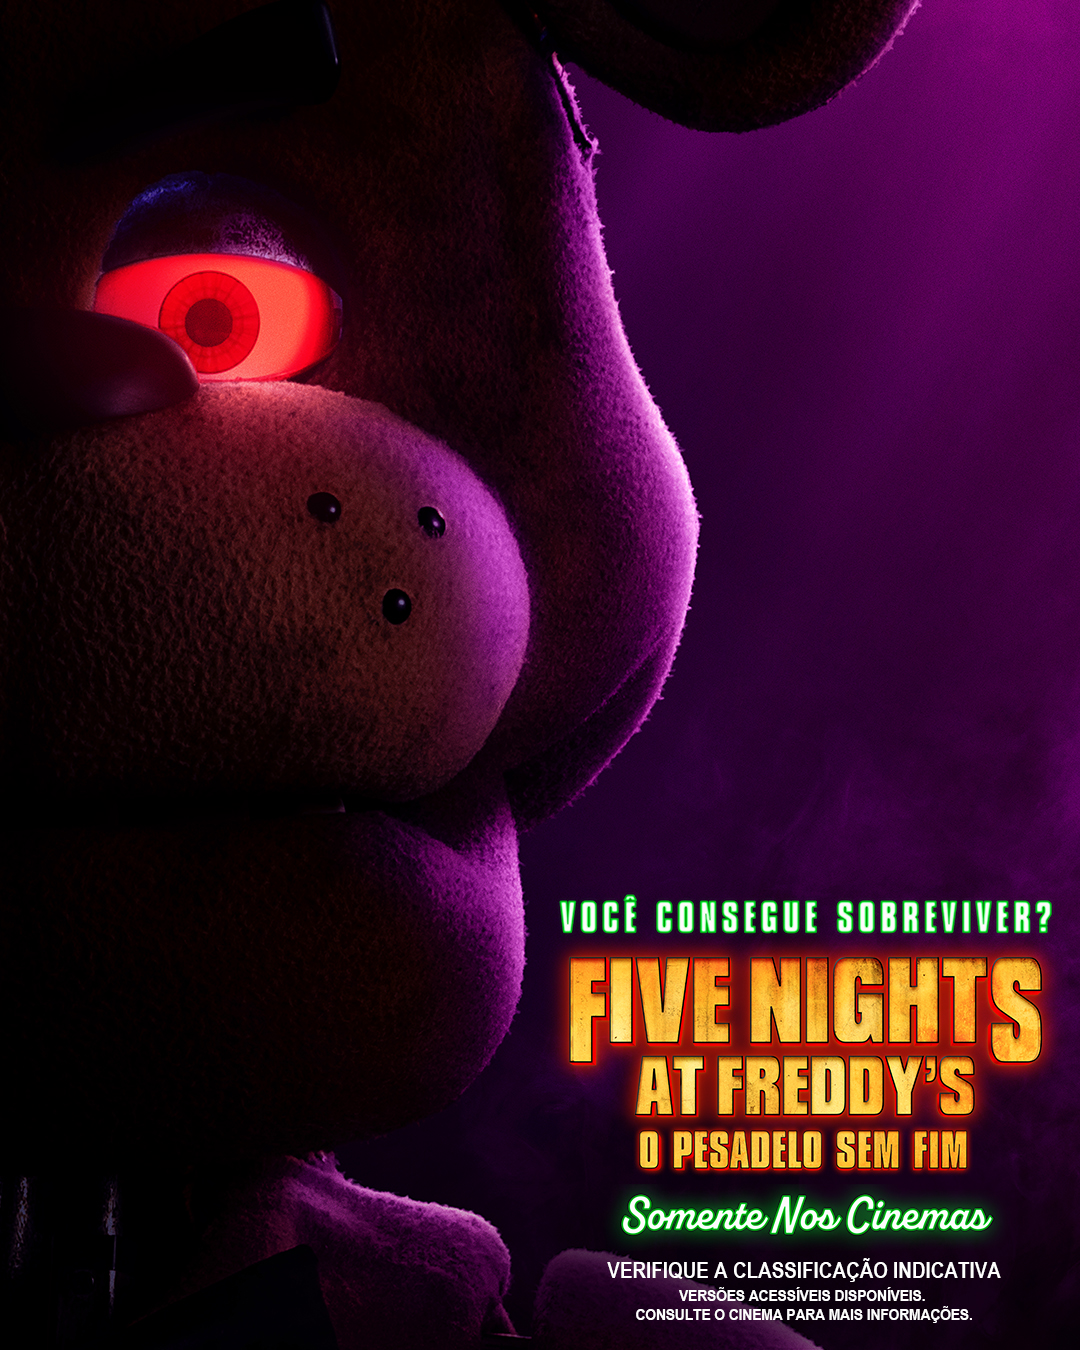 Five Nights at Freddy's - Pesadelo Sem Fim é um filme indeciso que dec